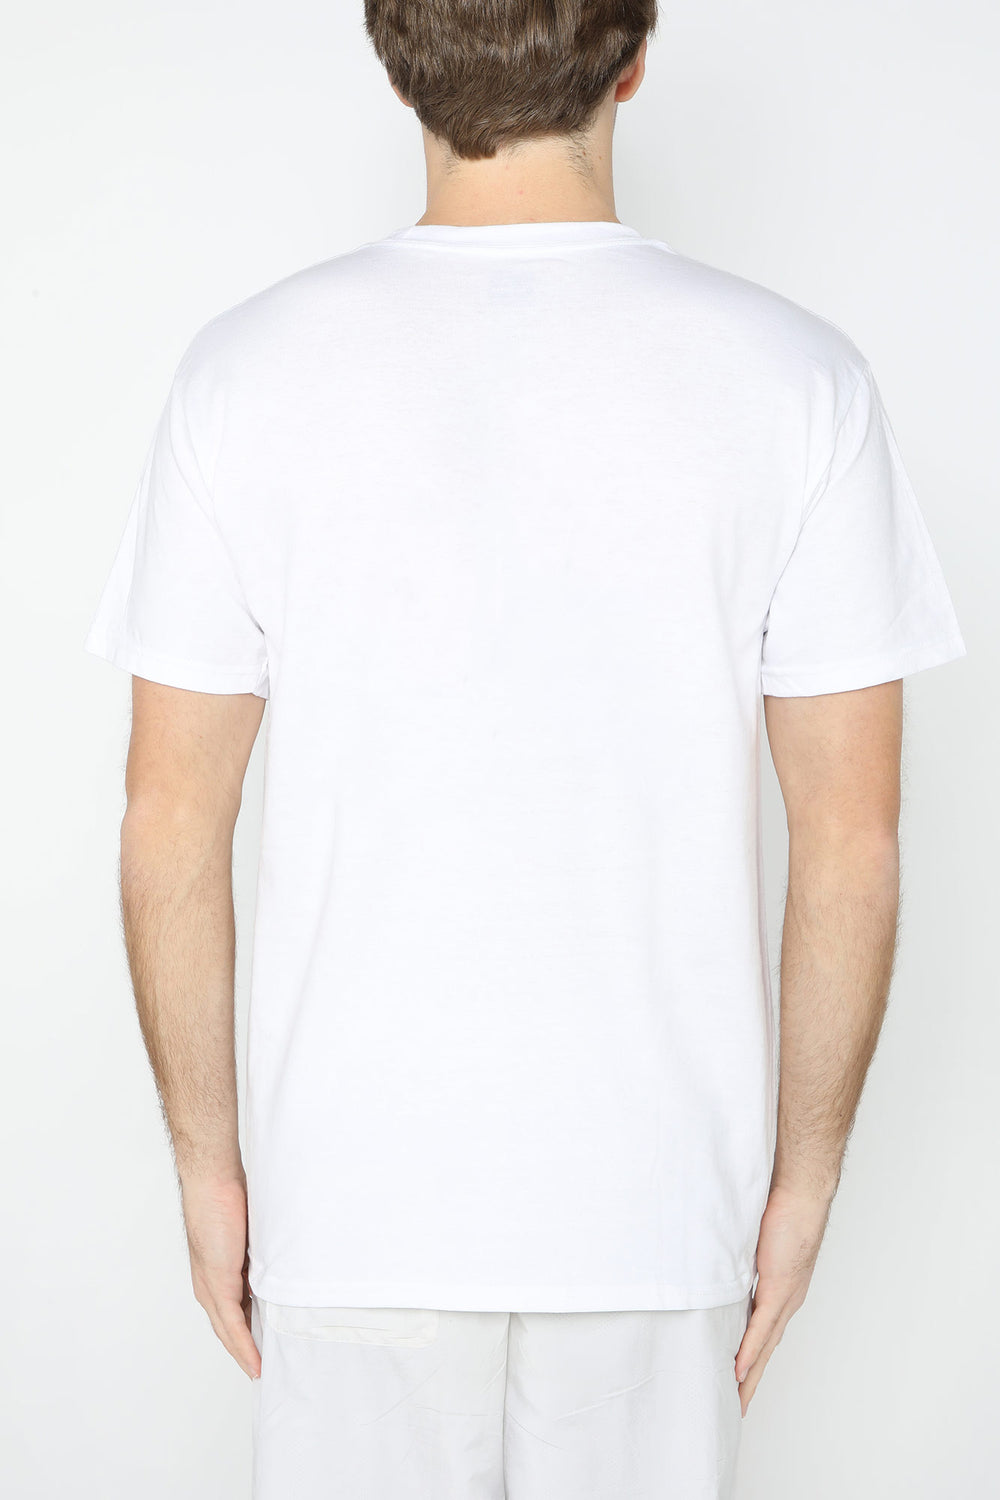 T-Shirt Blanc Logo Skate Mag Thrasher Blanc